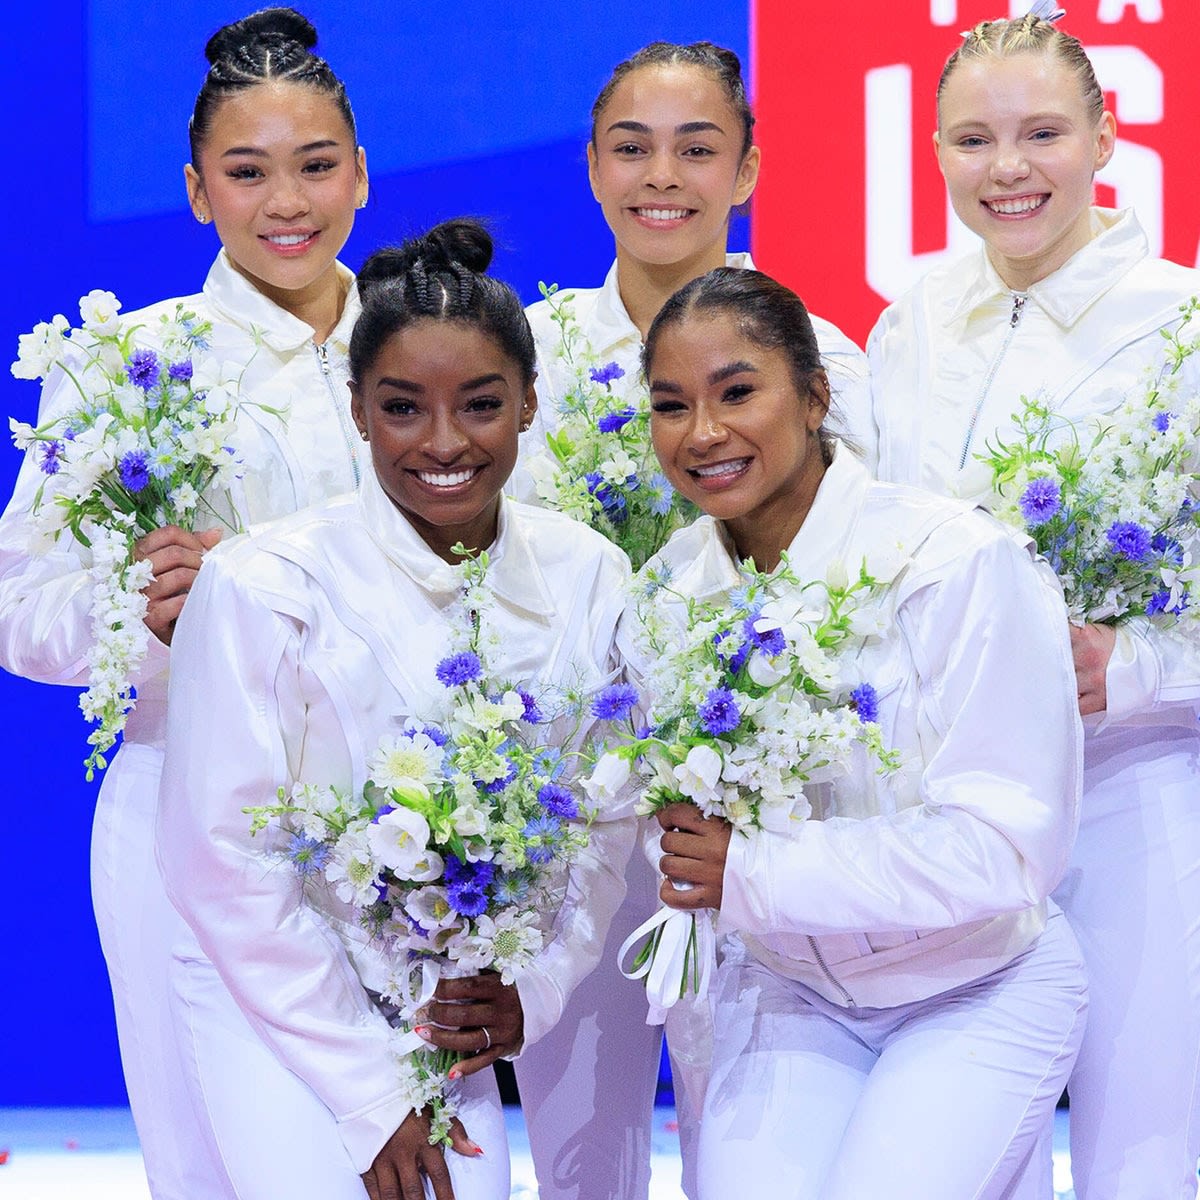 Olympics 2024: Meet the U.S. Women's Gymnastics Team Heading to Paris